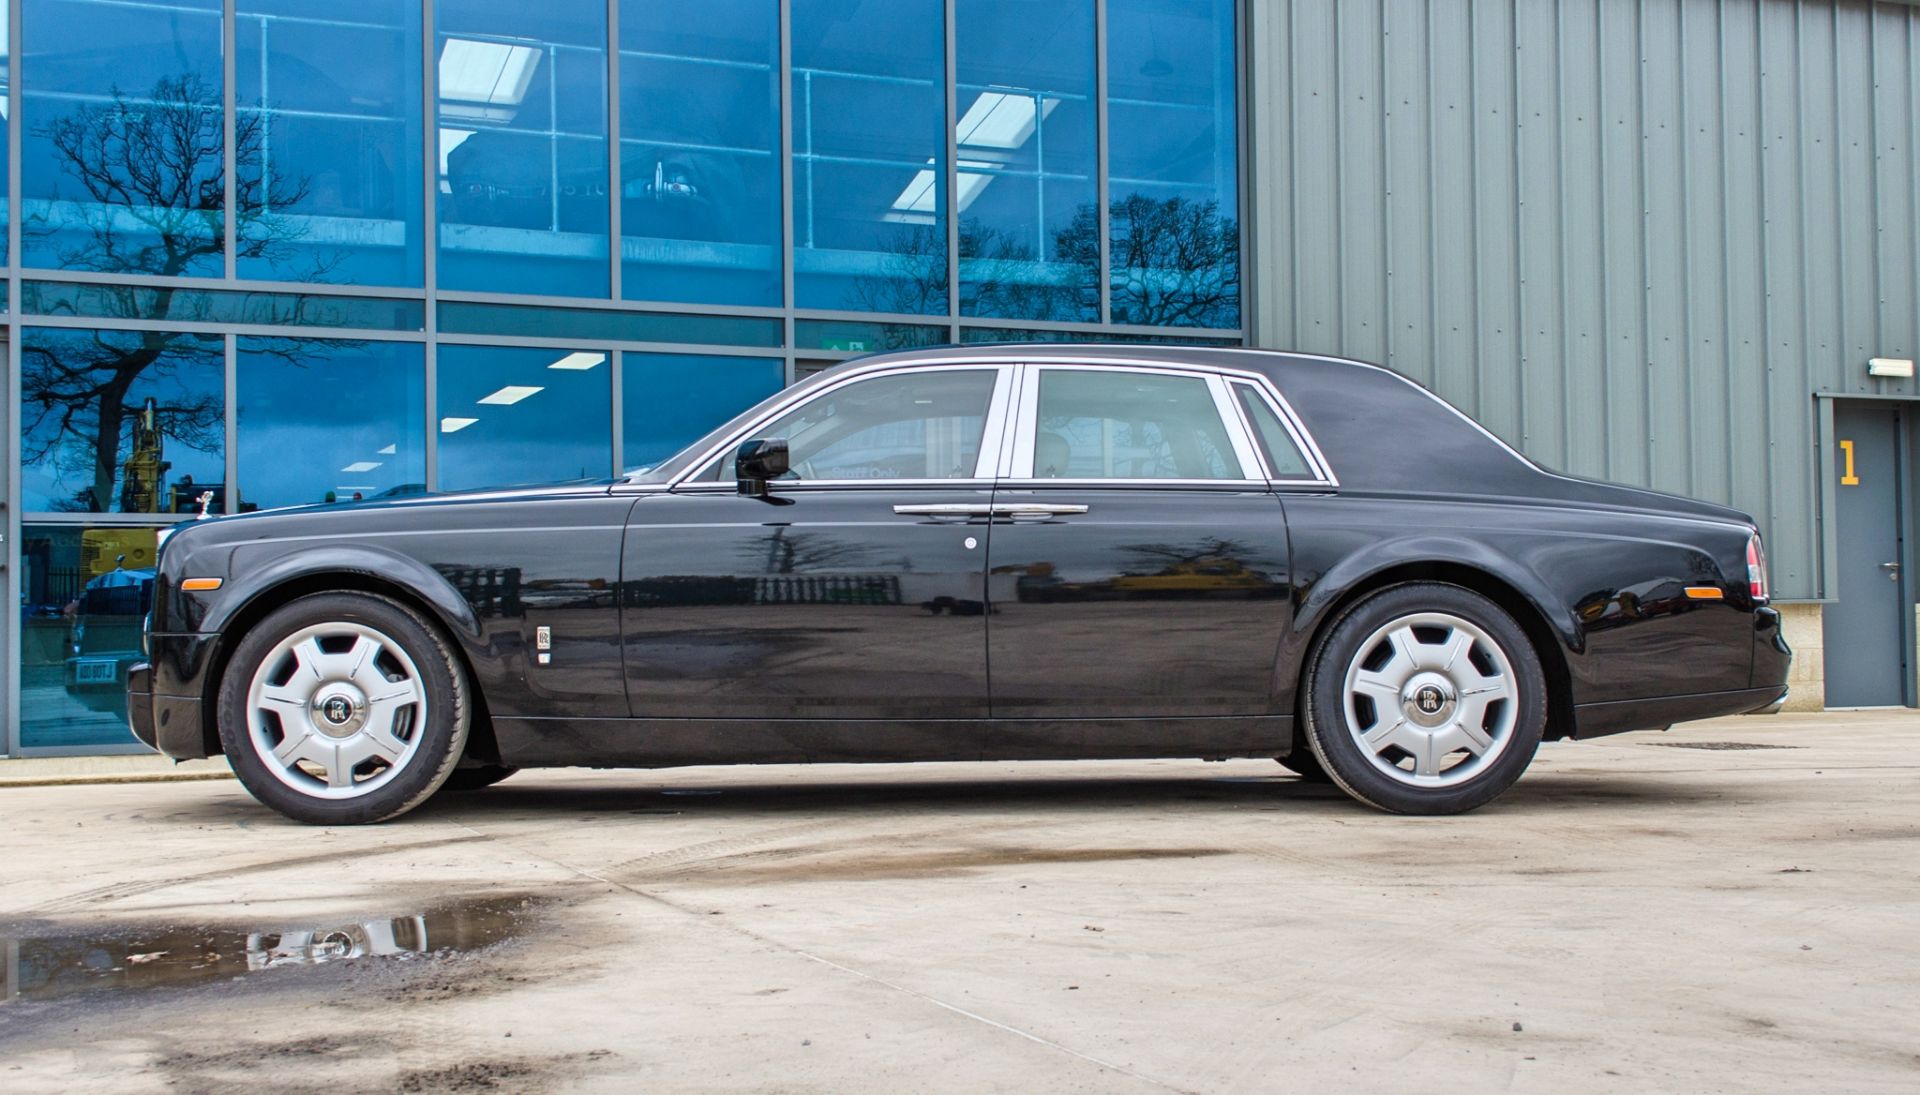 2008 Rolls Royce Phantom 6.75 litre V12 4 door saloon - Image 15 of 60